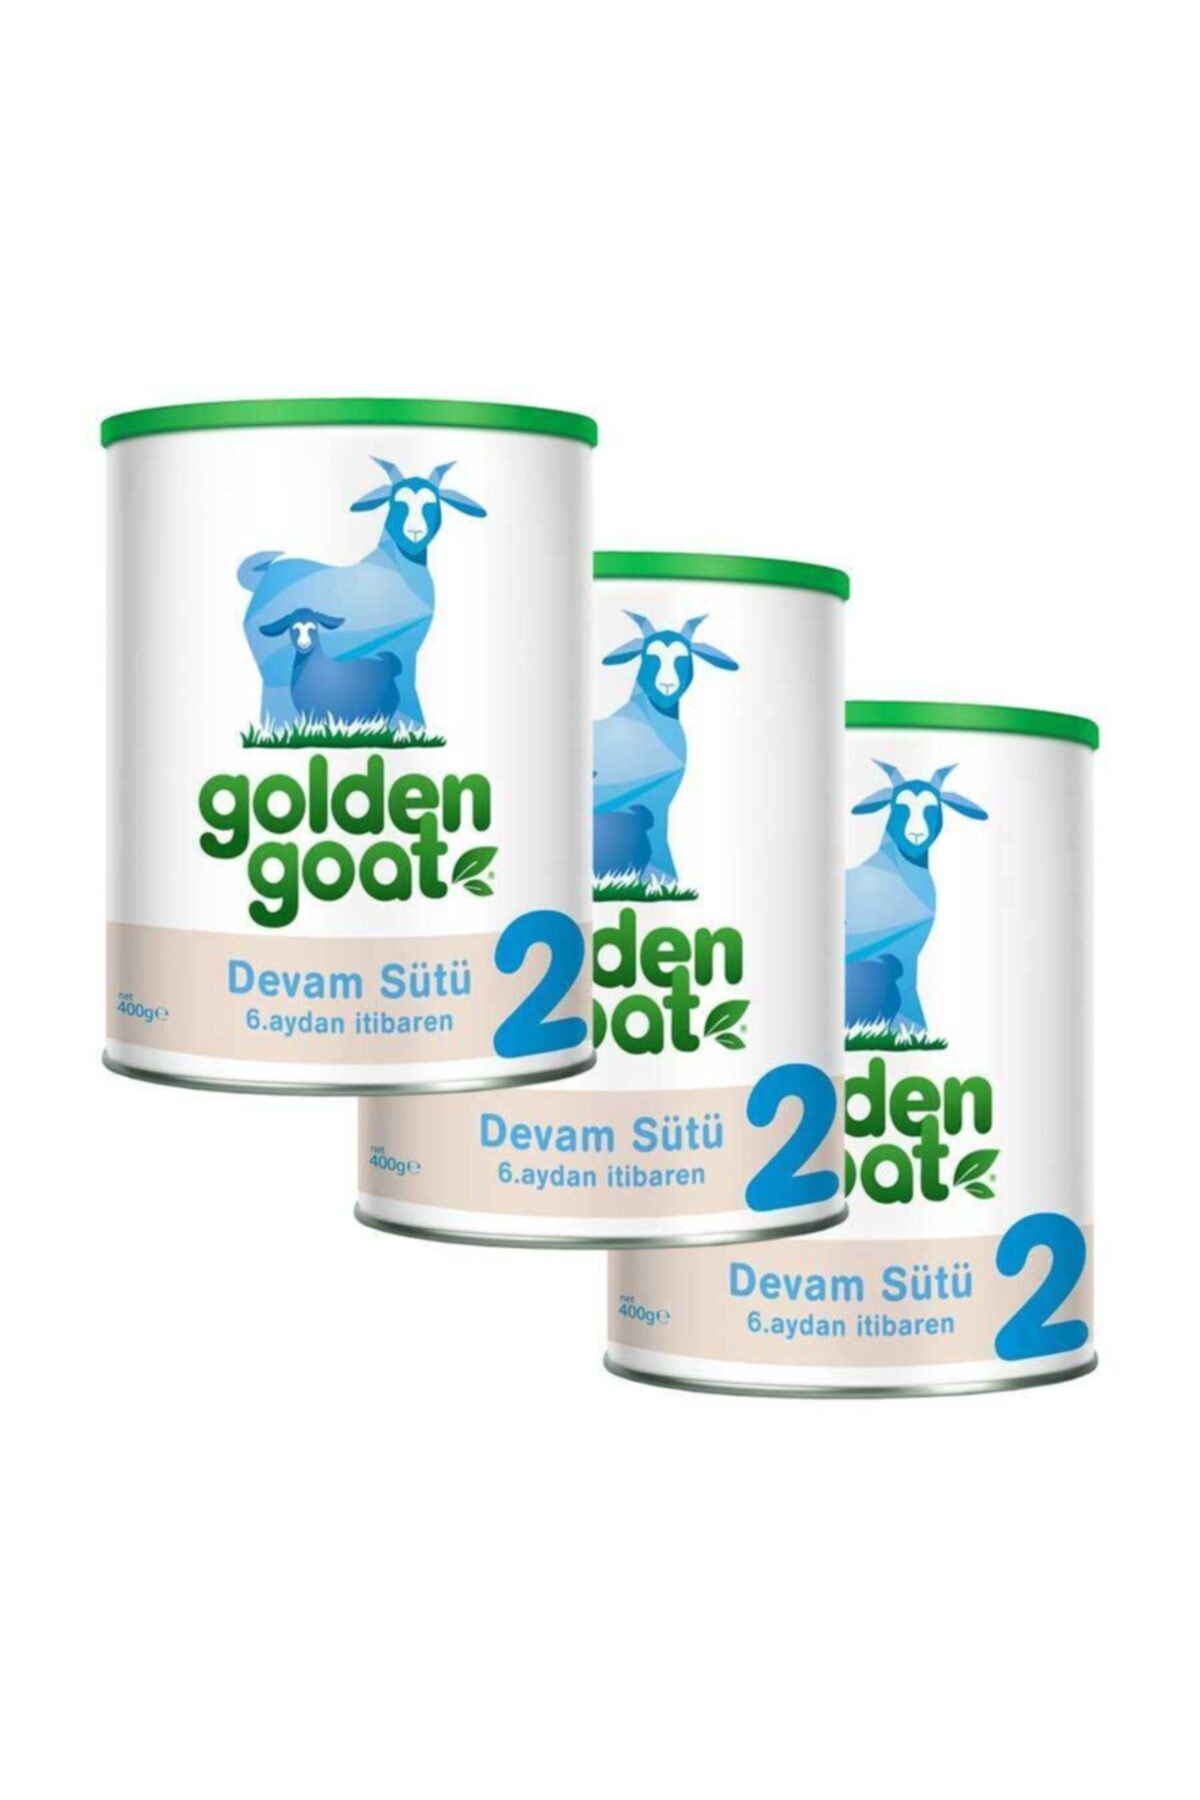 Golden Goat 2 Keçi Sütü Bazlı Devam Sütü 400gr* 3'lü Paket